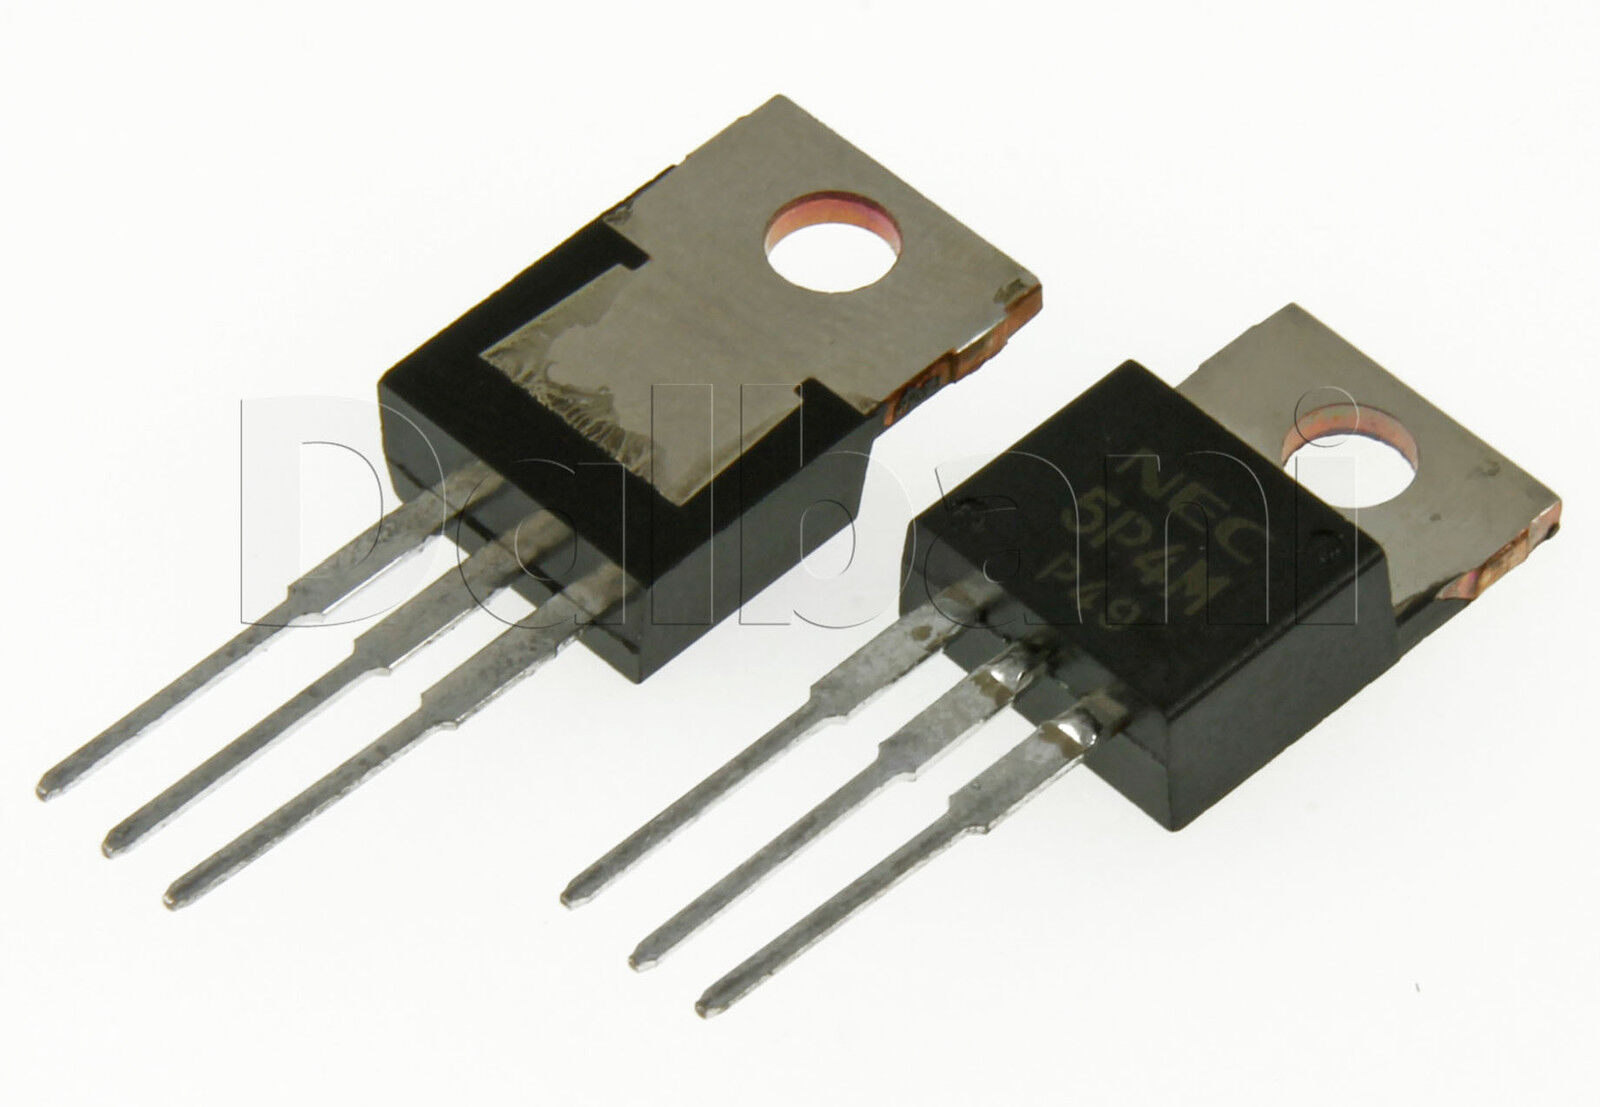 5P4M Original New Nec Transistor